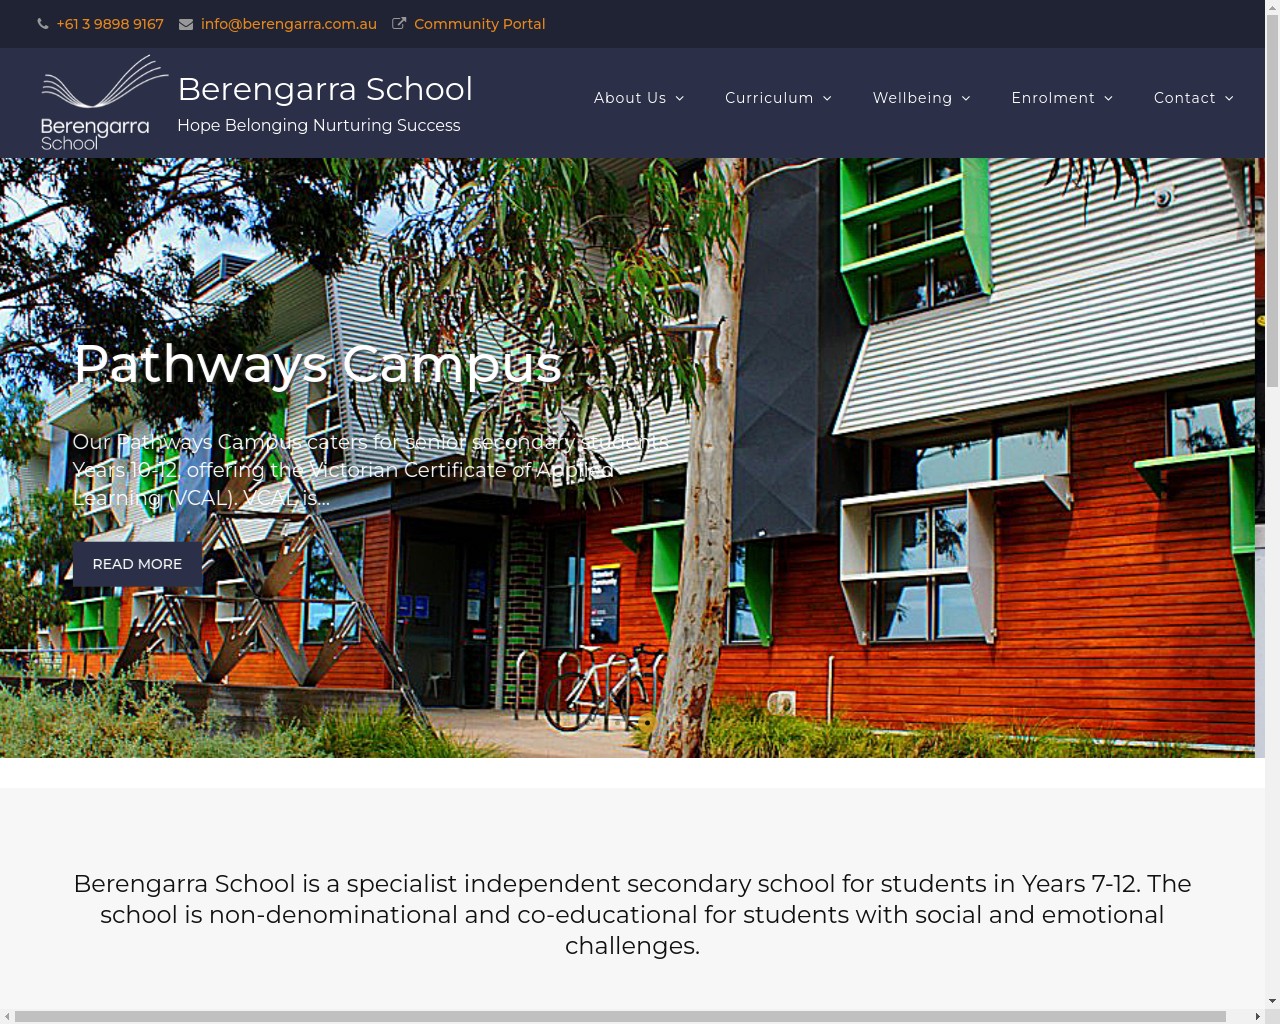 Berengarra School